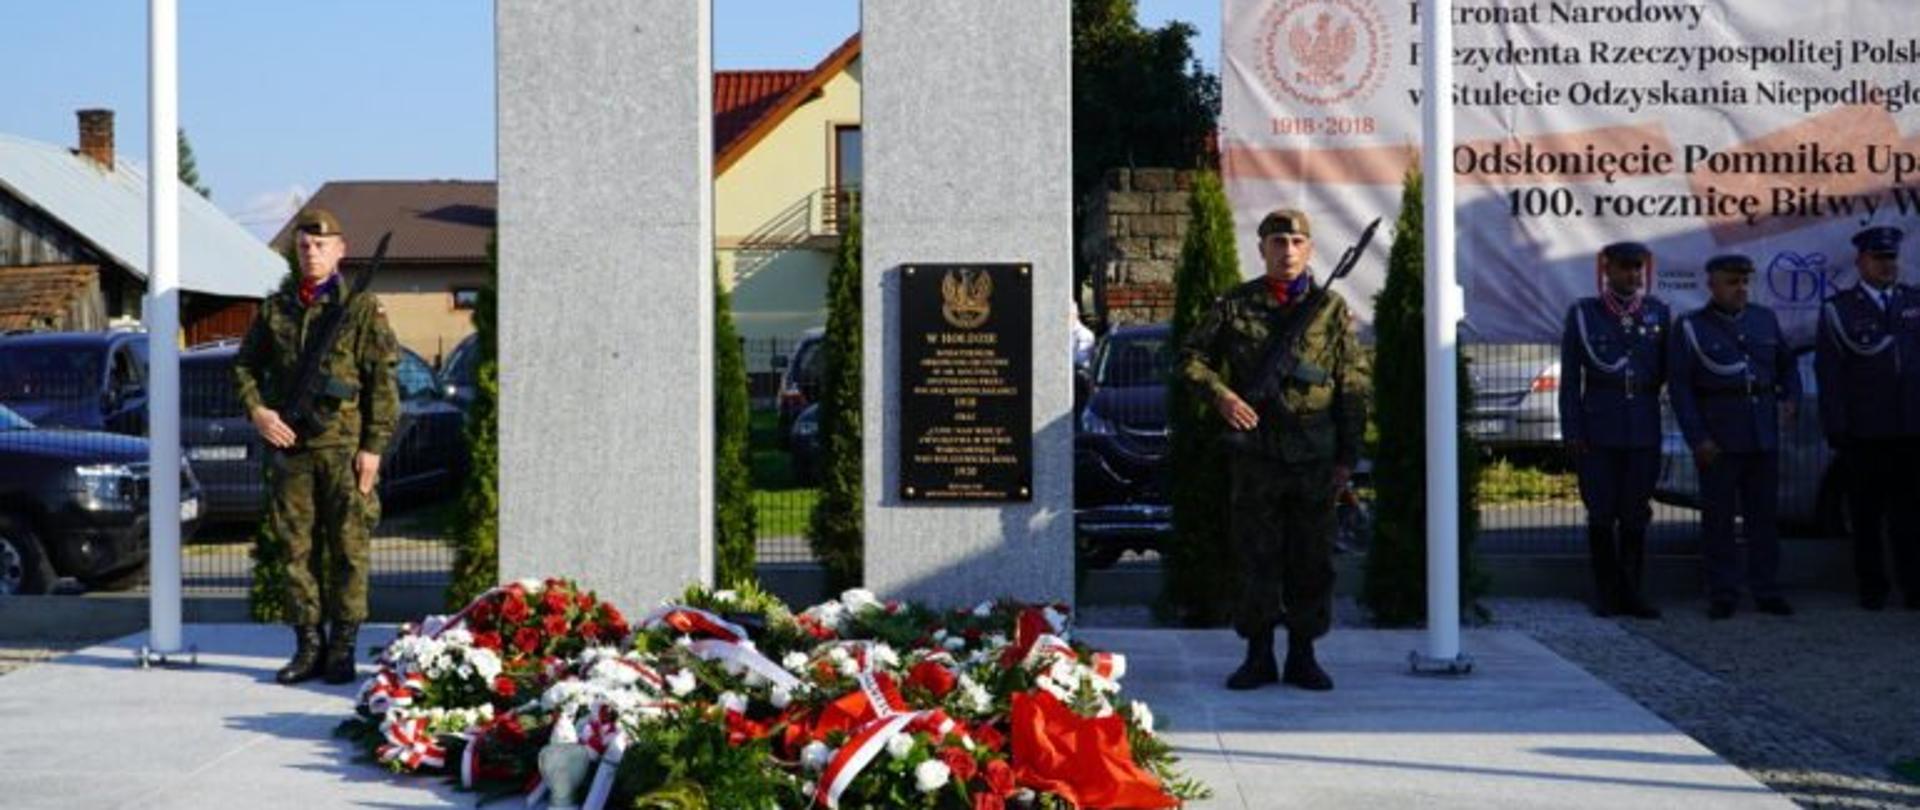 Odsłonięcie w Harcie pomnika upamiętniającego Bitwę Warszawską